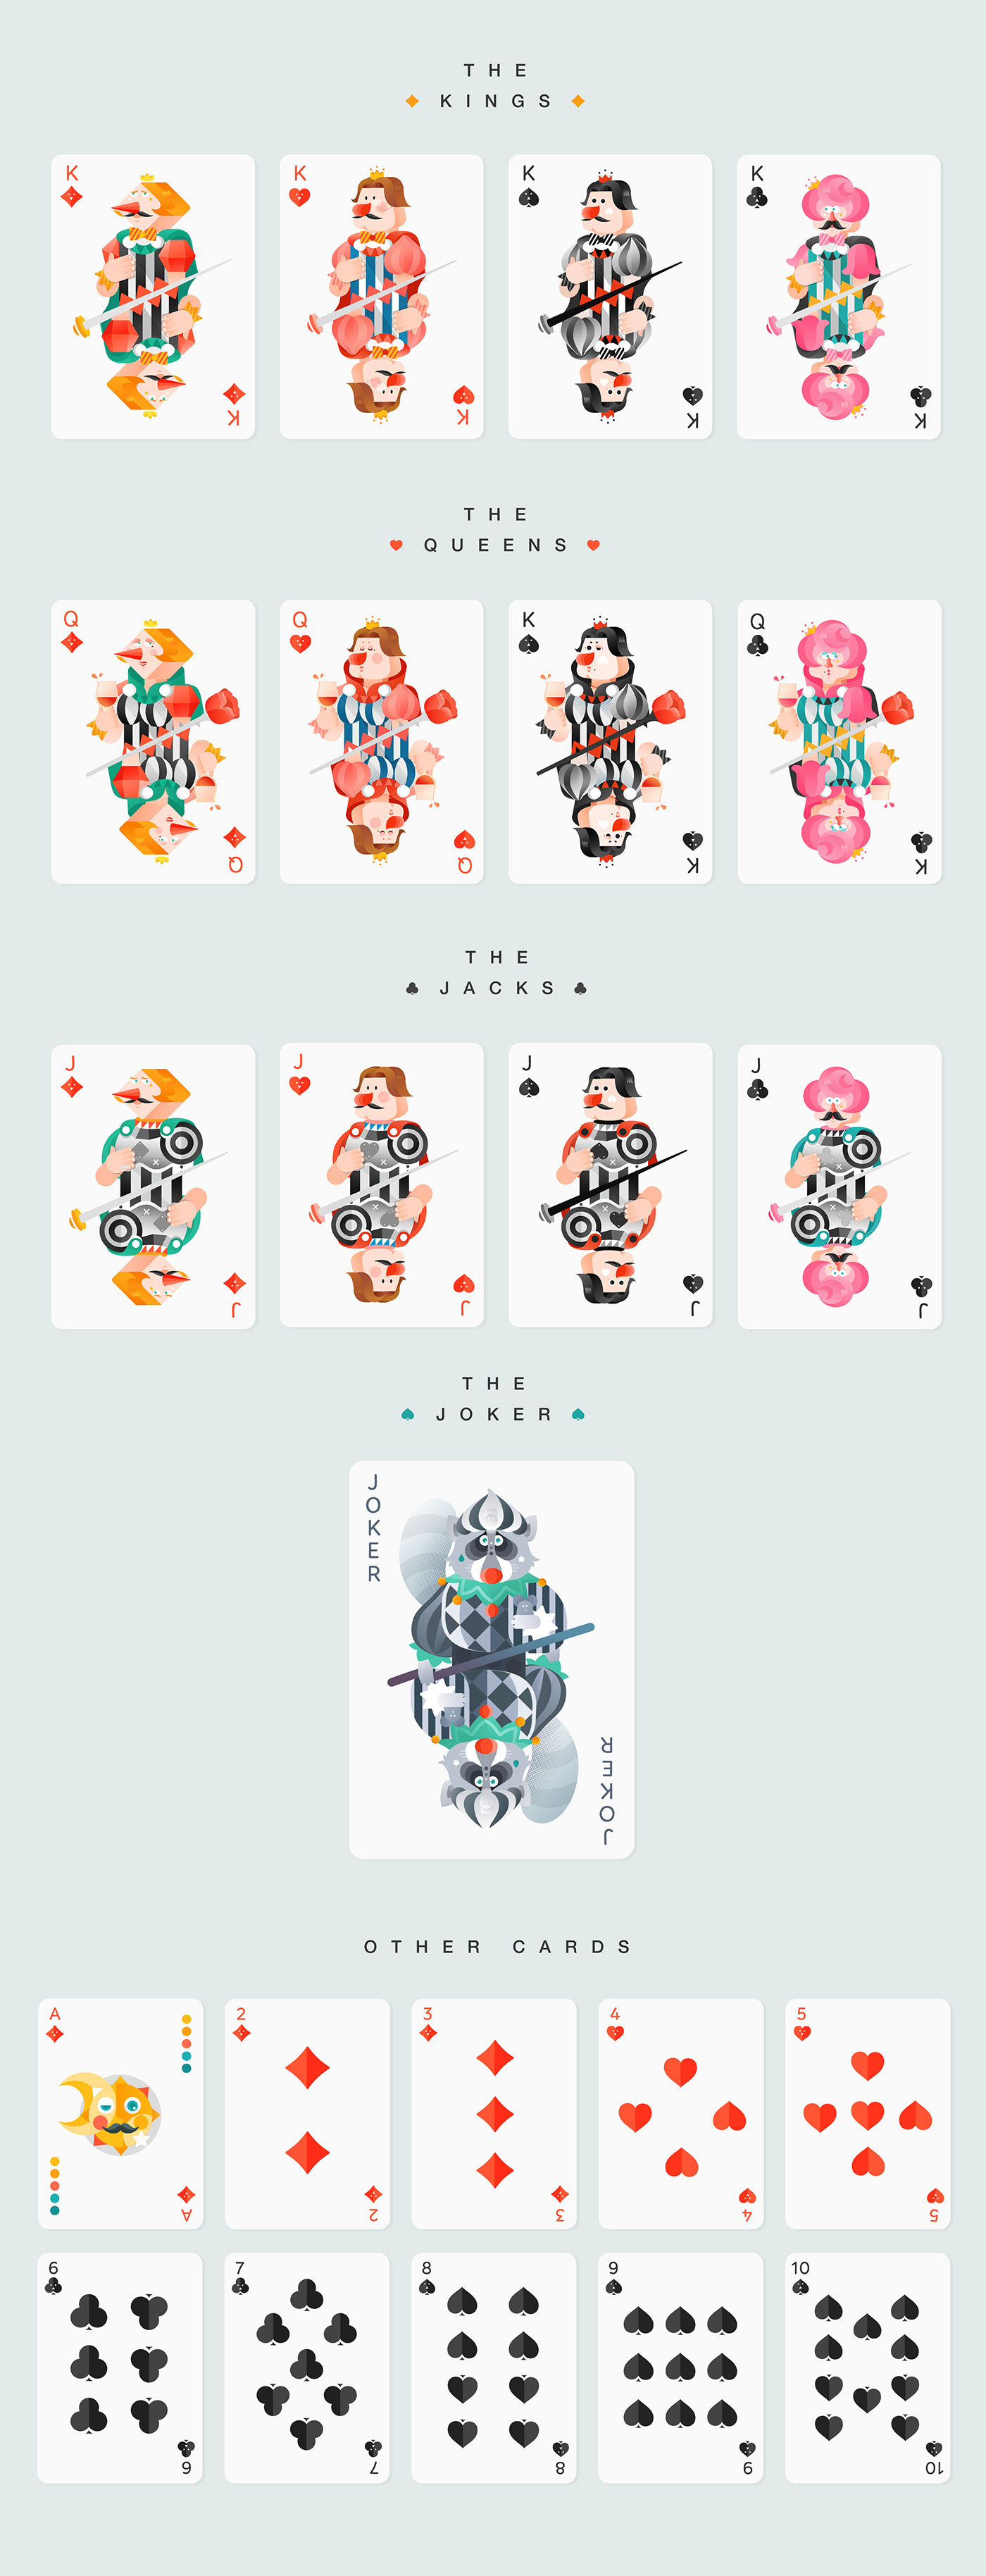 Poker playing card raccoon clown Character design  king queen joker